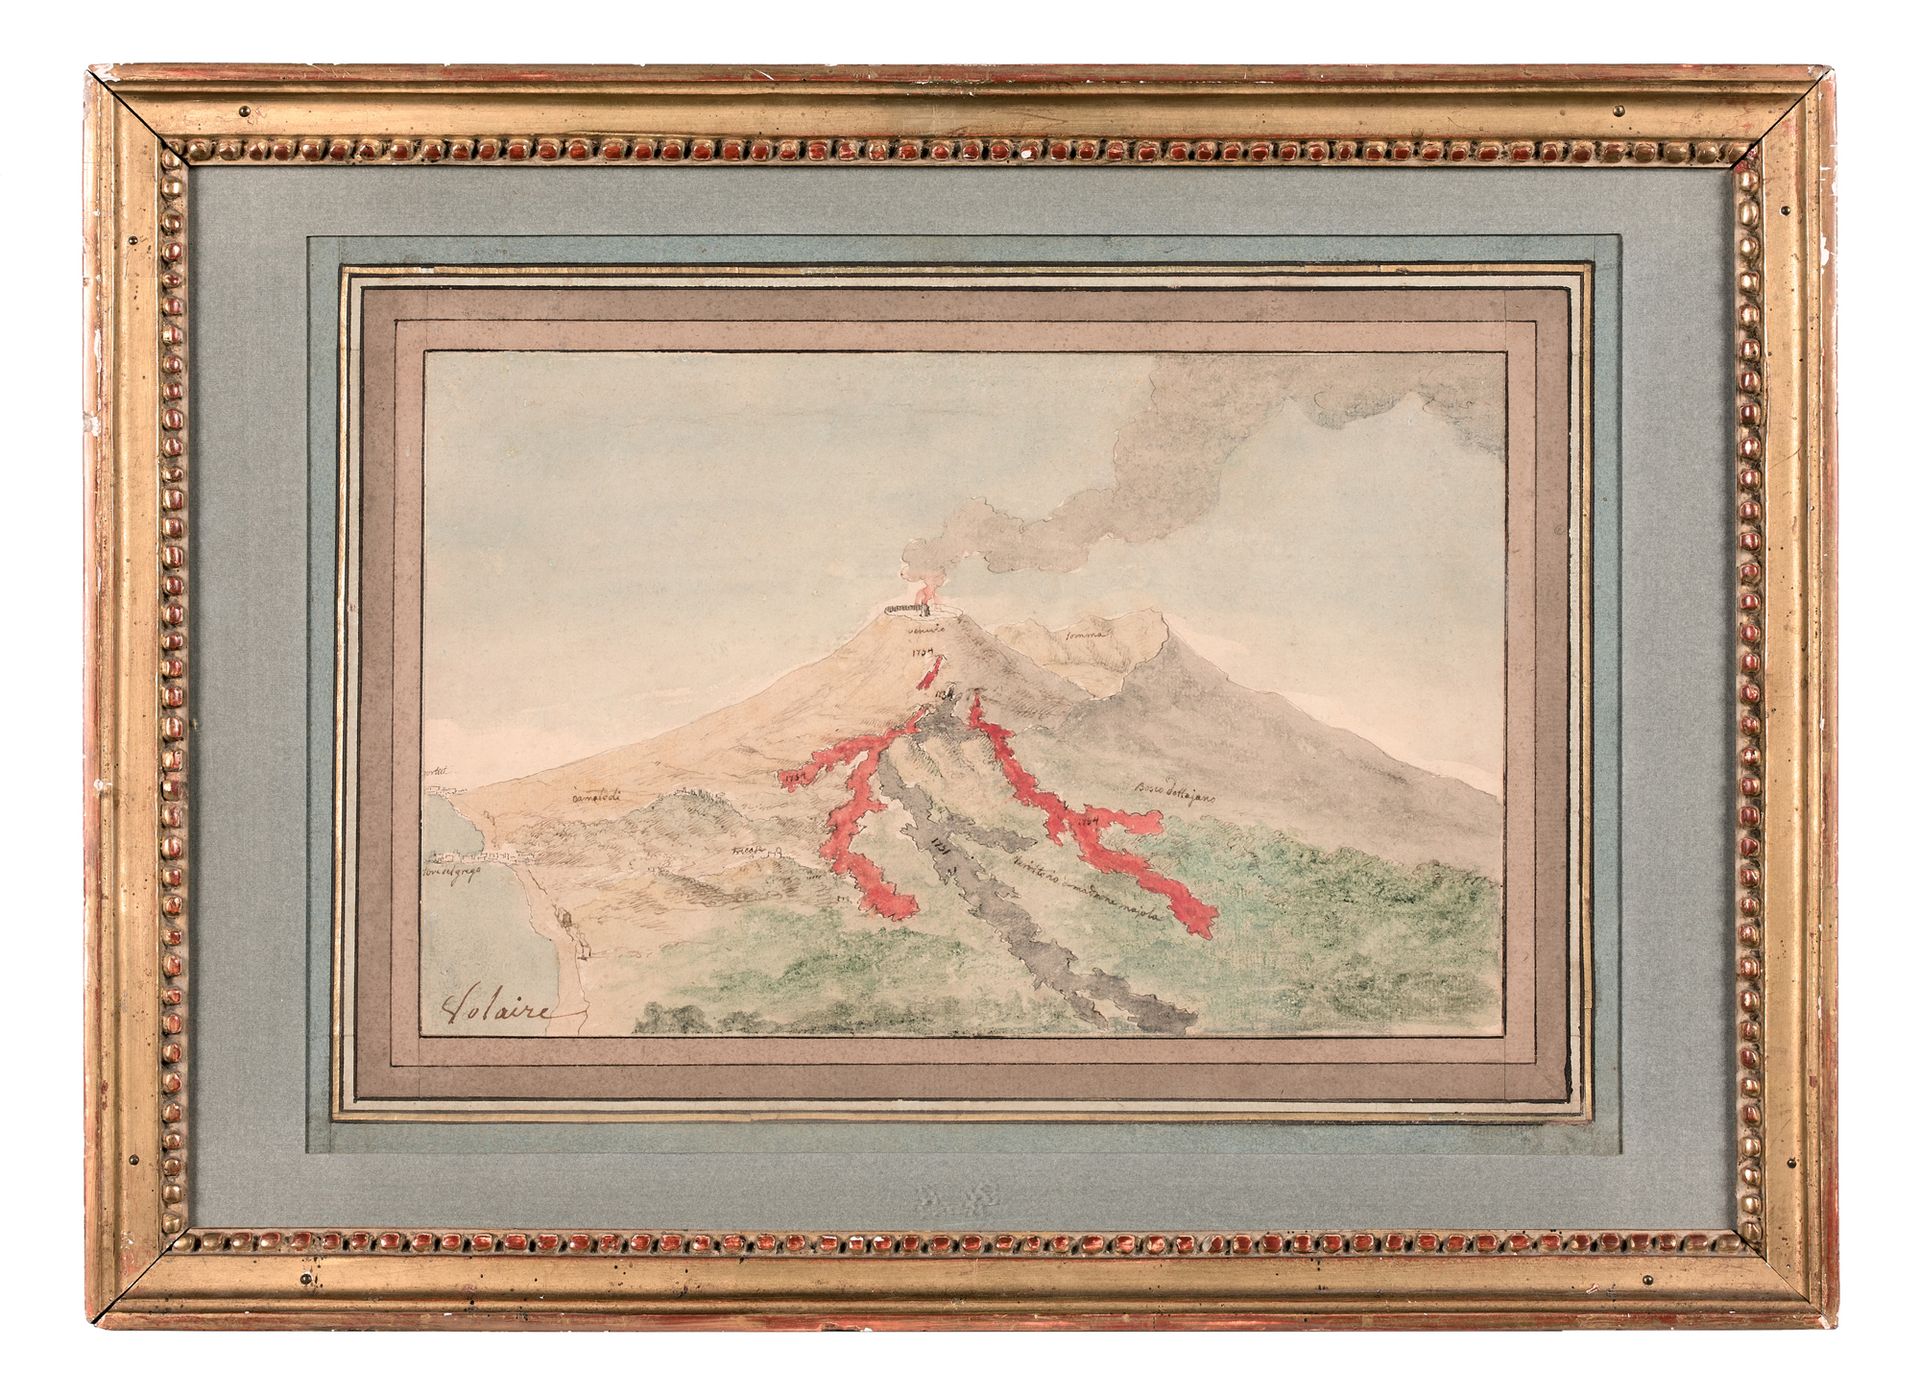 Ignace VERNET (Avignon 1726 - Naples après 1770) Eruption of Vesuvius
Pen and gr&hellip;